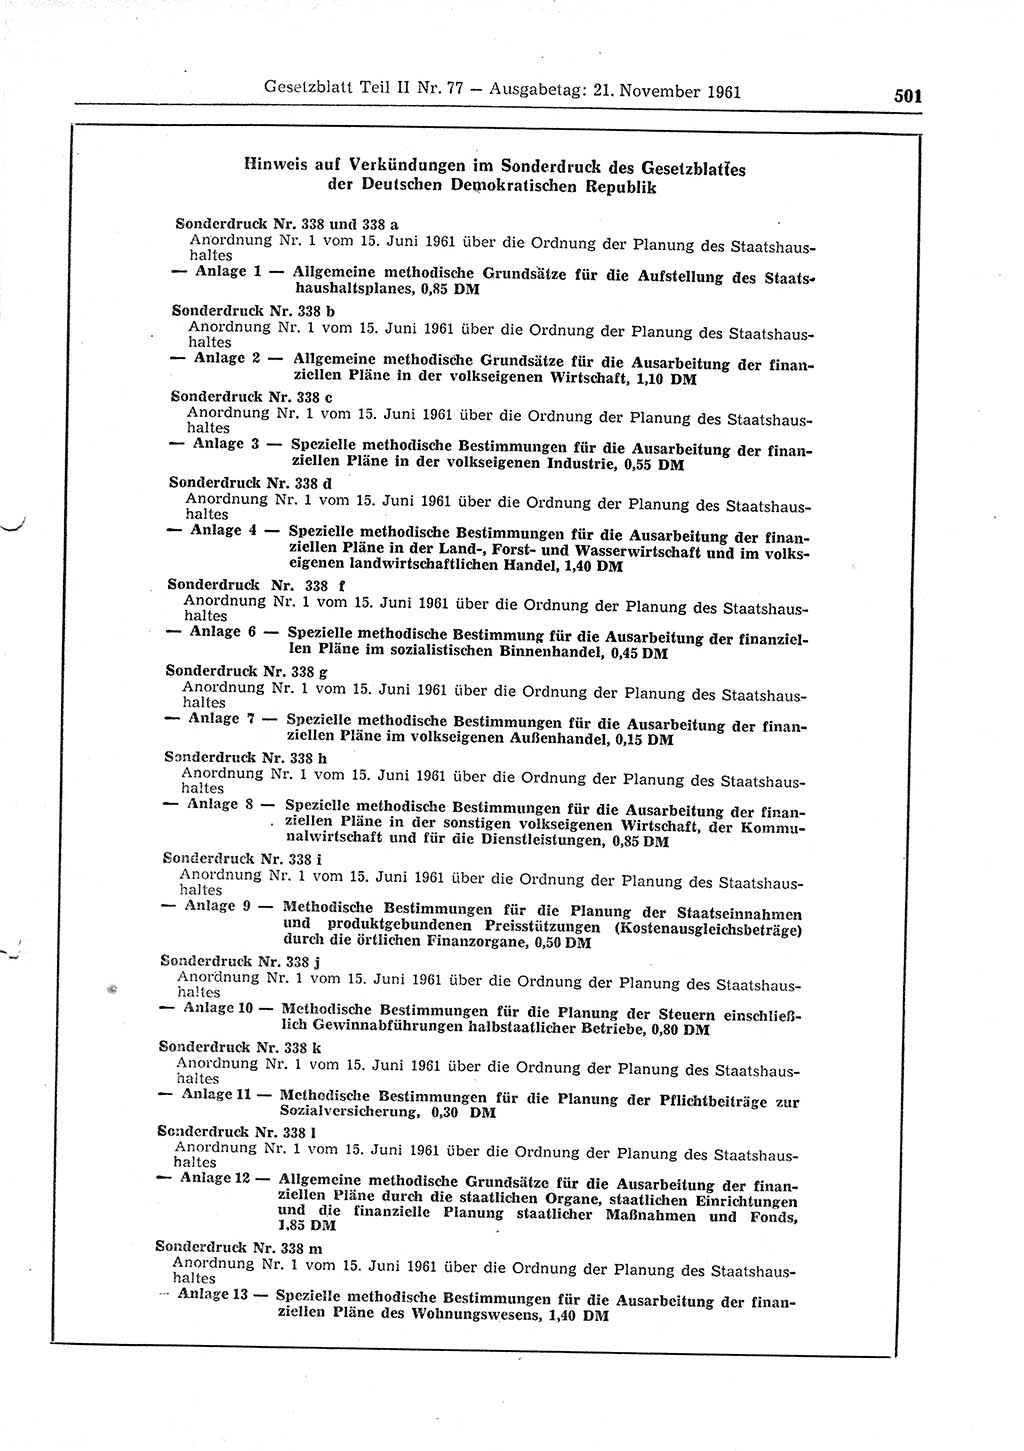 Gesetzblatt (GBl.) der Deutschen Demokratischen Republik (DDR) Teil ⅠⅠ 1961, Seite 501 (GBl. DDR ⅠⅠ 1961, S. 501)